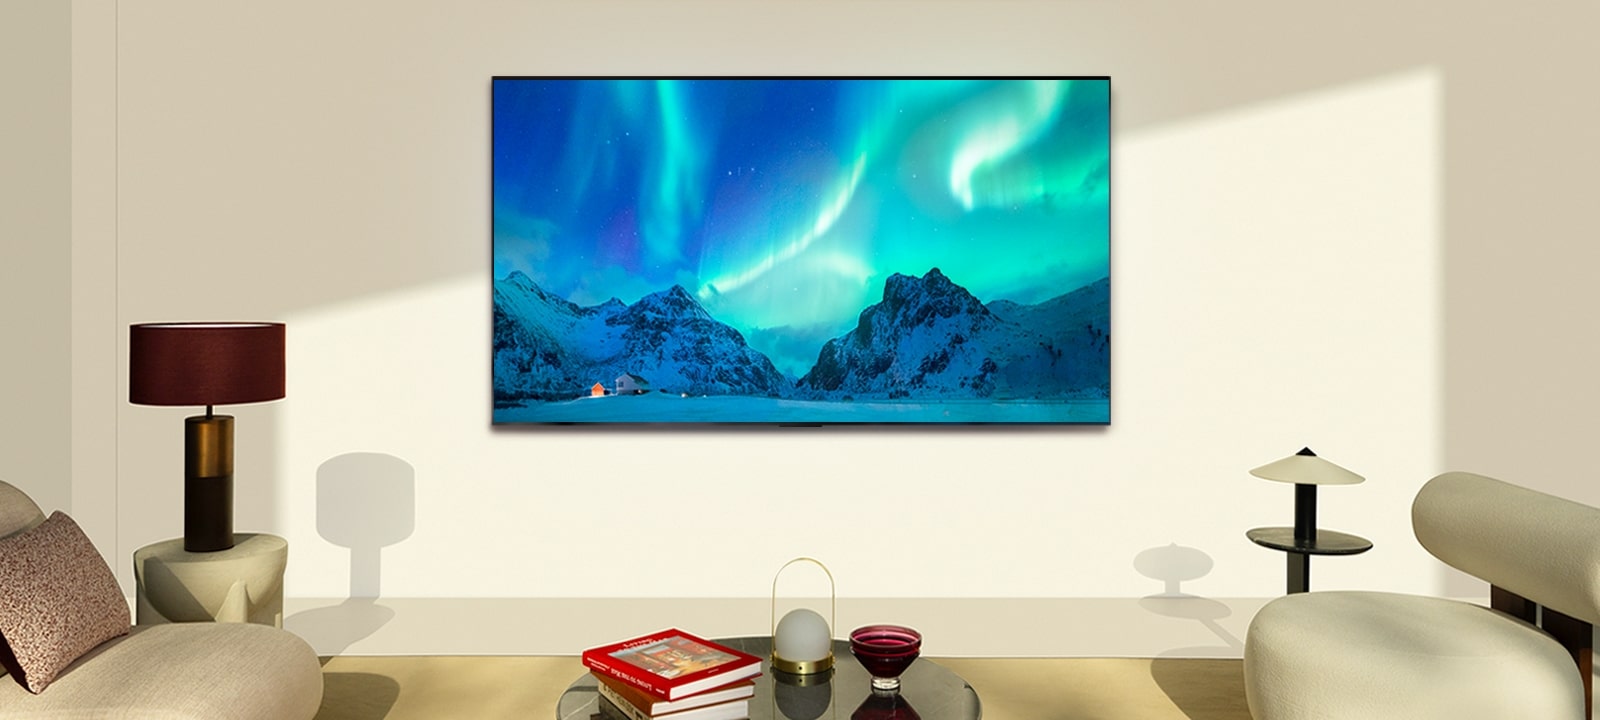 Un TV LG OLED dans un espace de vie moderne de jour. L’image à l’écran d’une aurore boréale est affichée, avec des niveaux de luminosité idéals.